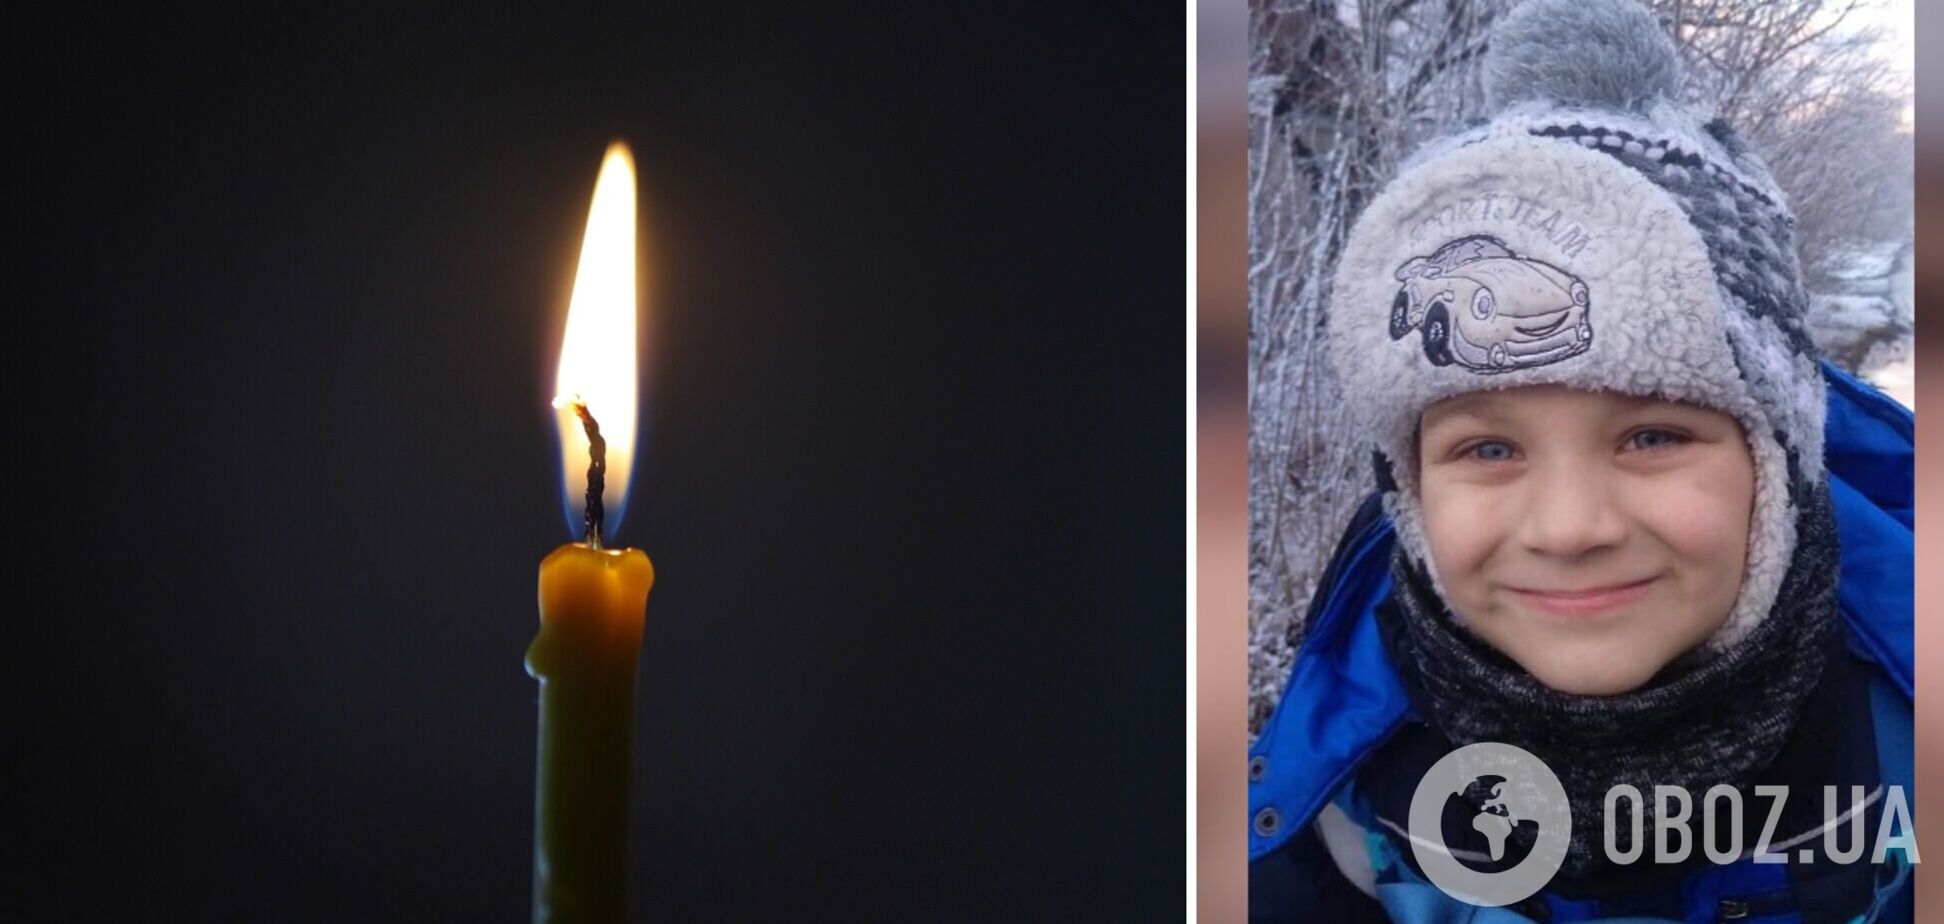 Пропавшего на Днепропетровщине 6-летнего мальчика нашли мертвым